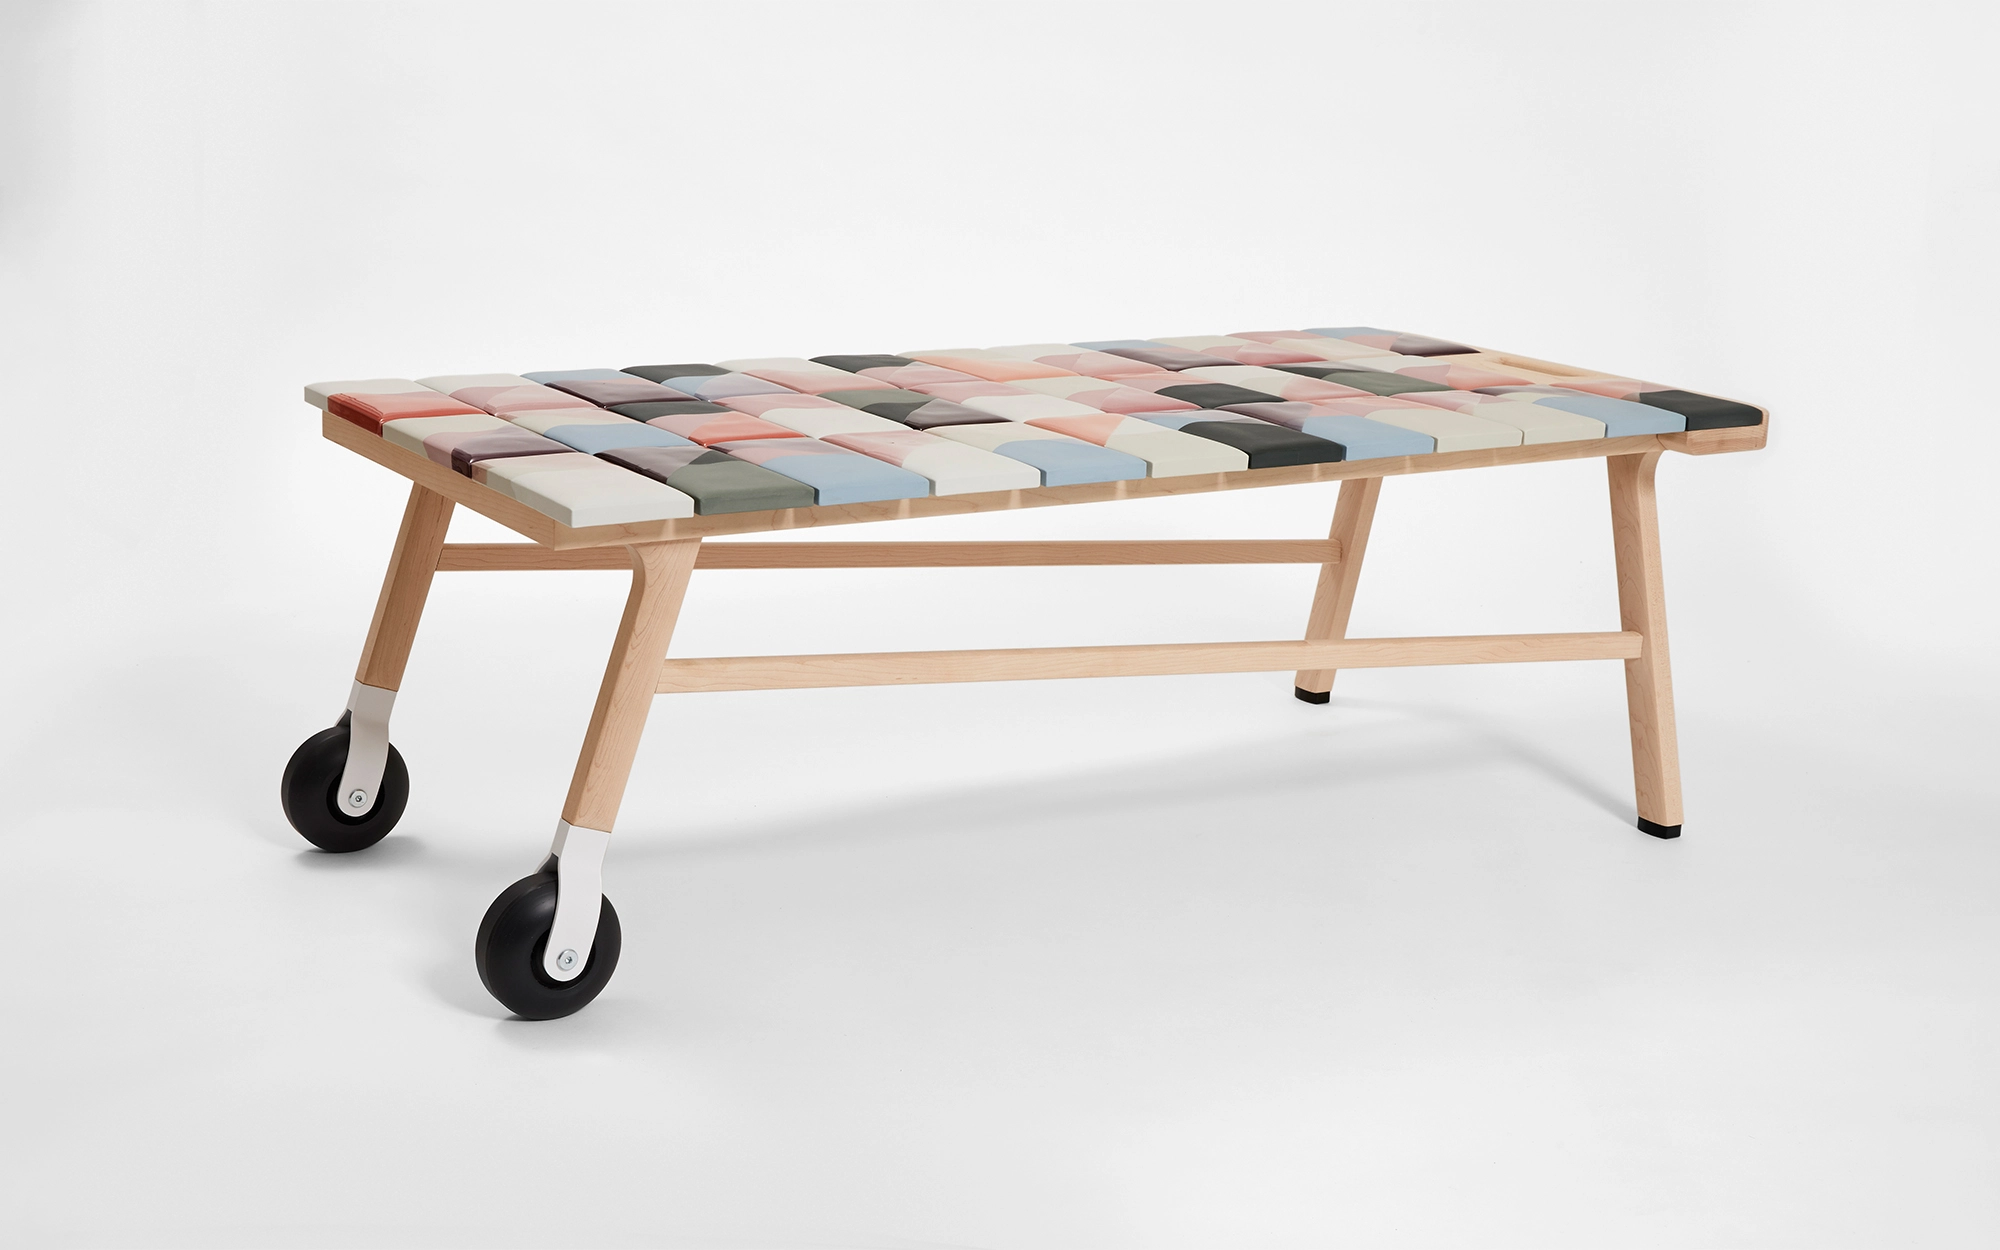 Tiles coffee table - Hella Jongerius - Chair - Galerie kreo